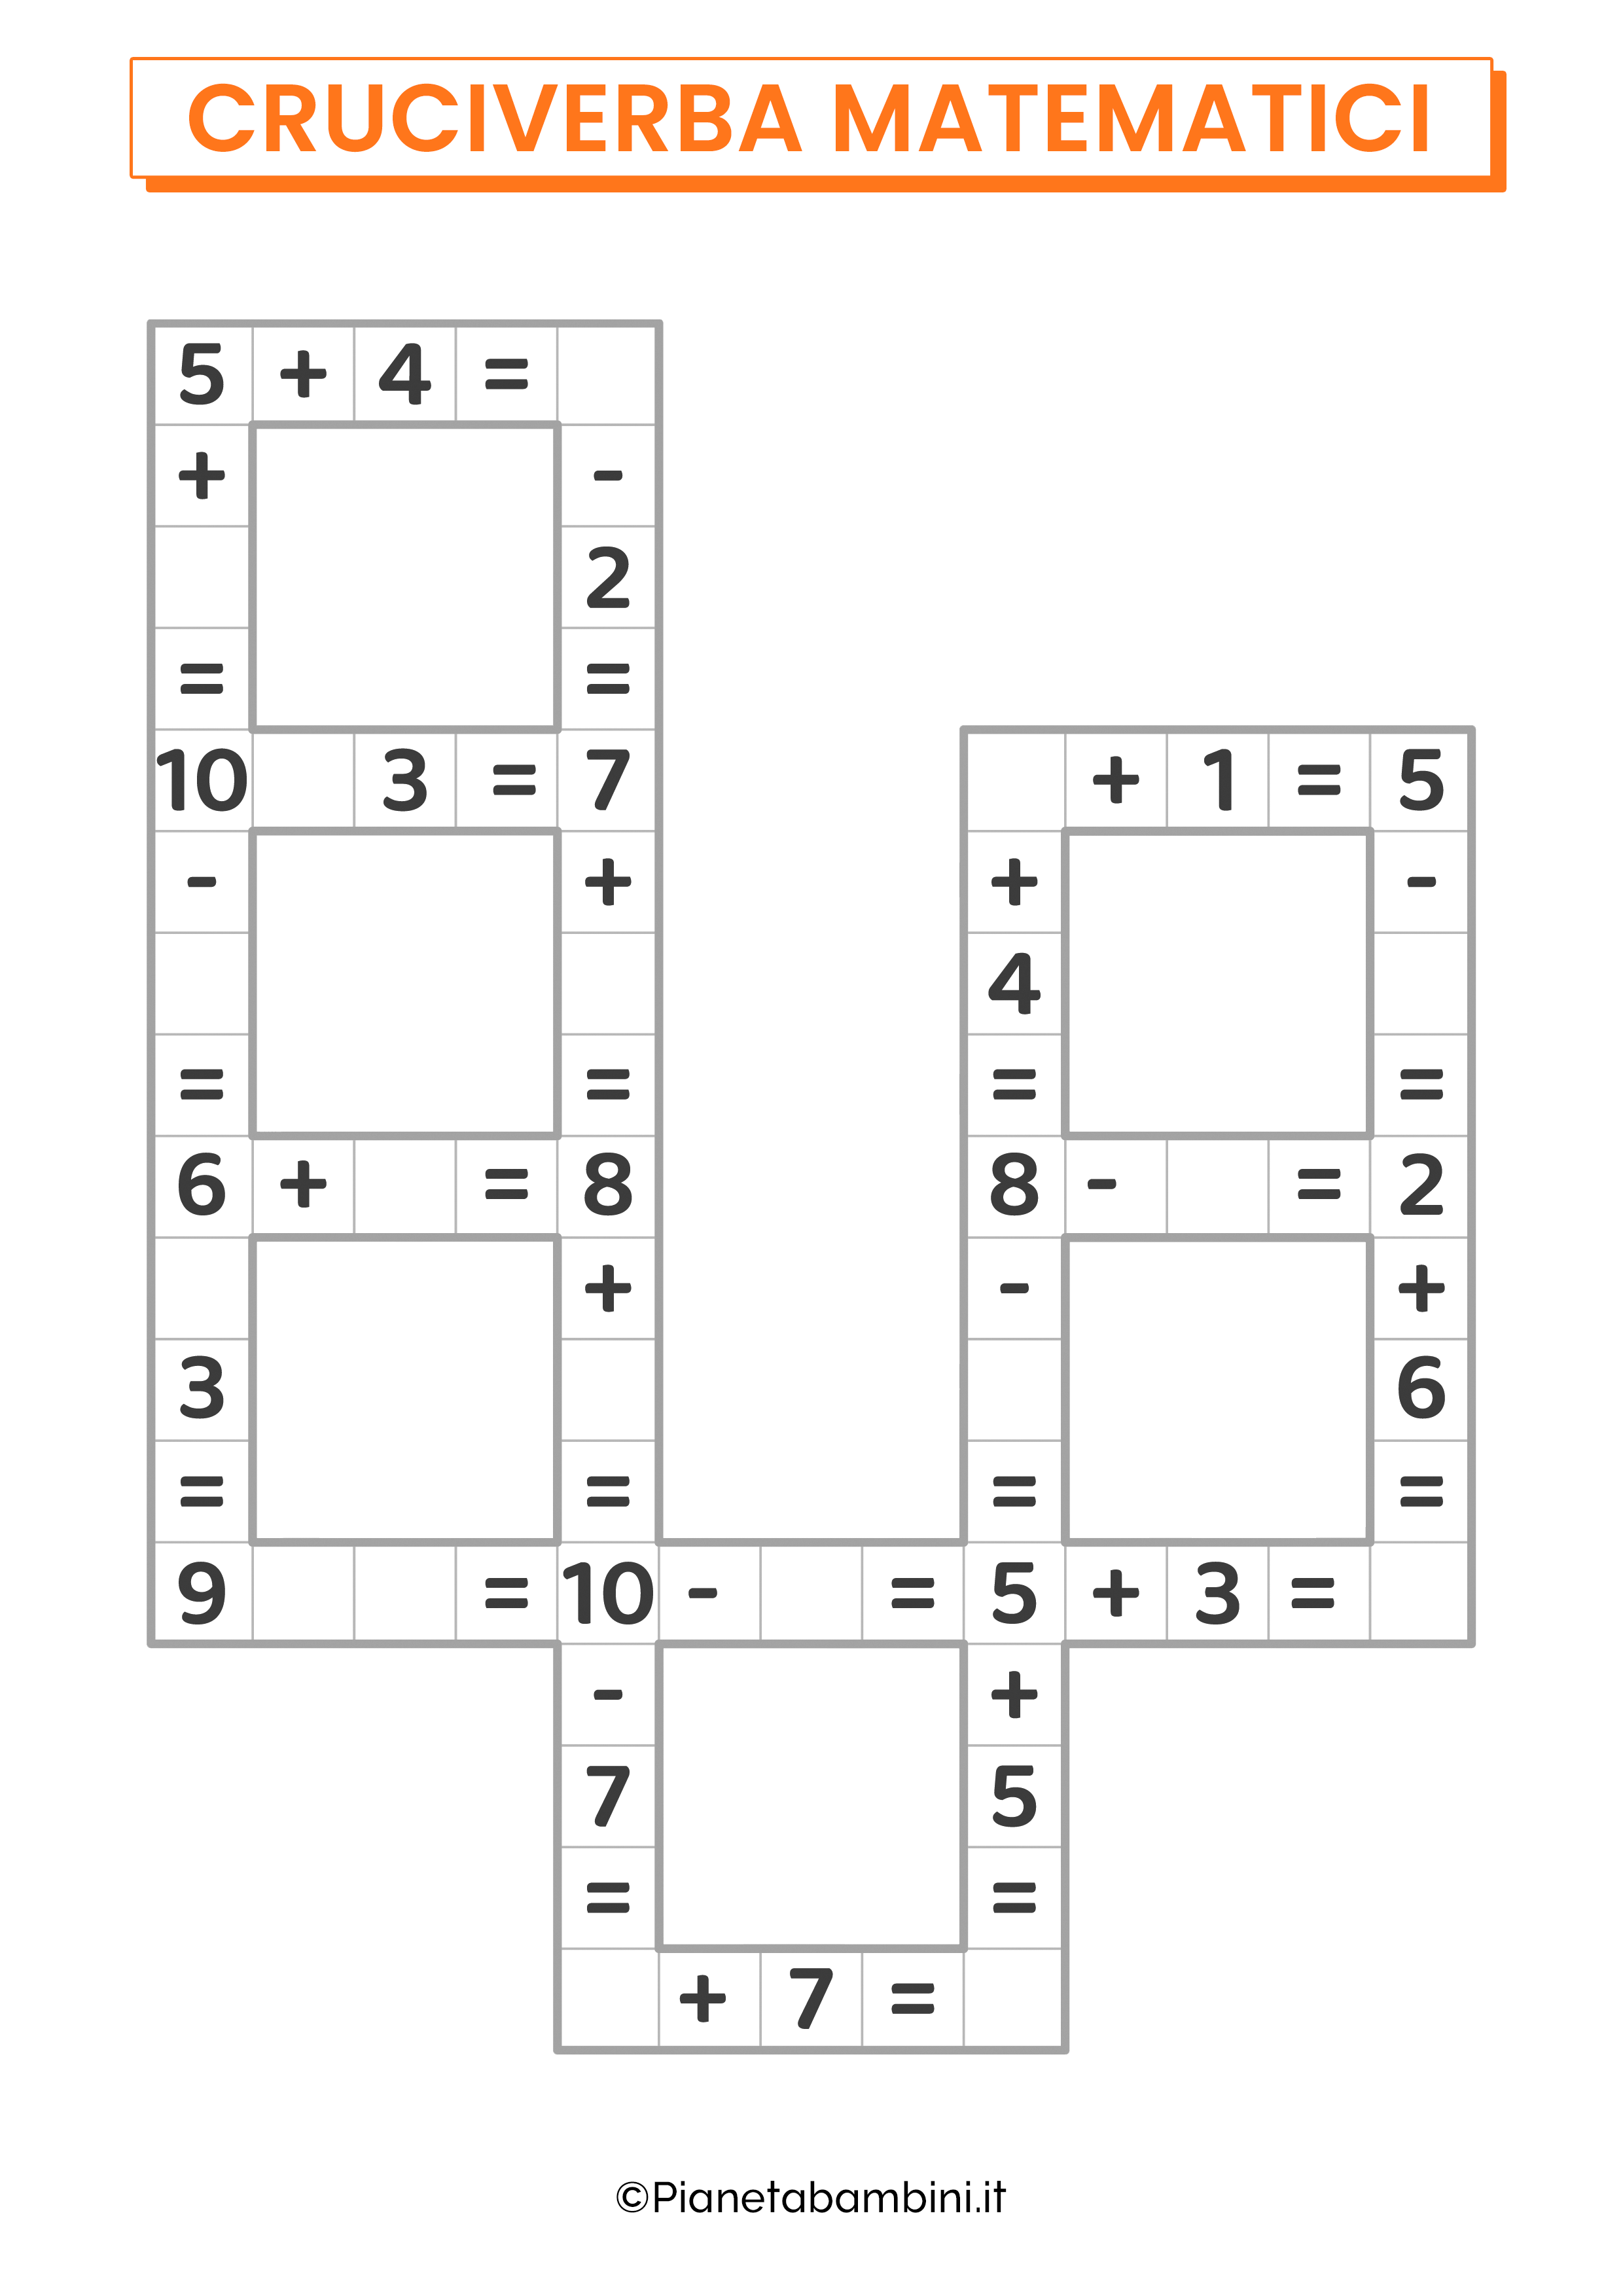 Cruciverba matematico con addizioni e sottrazioni entro il 10 per la classe prima 03